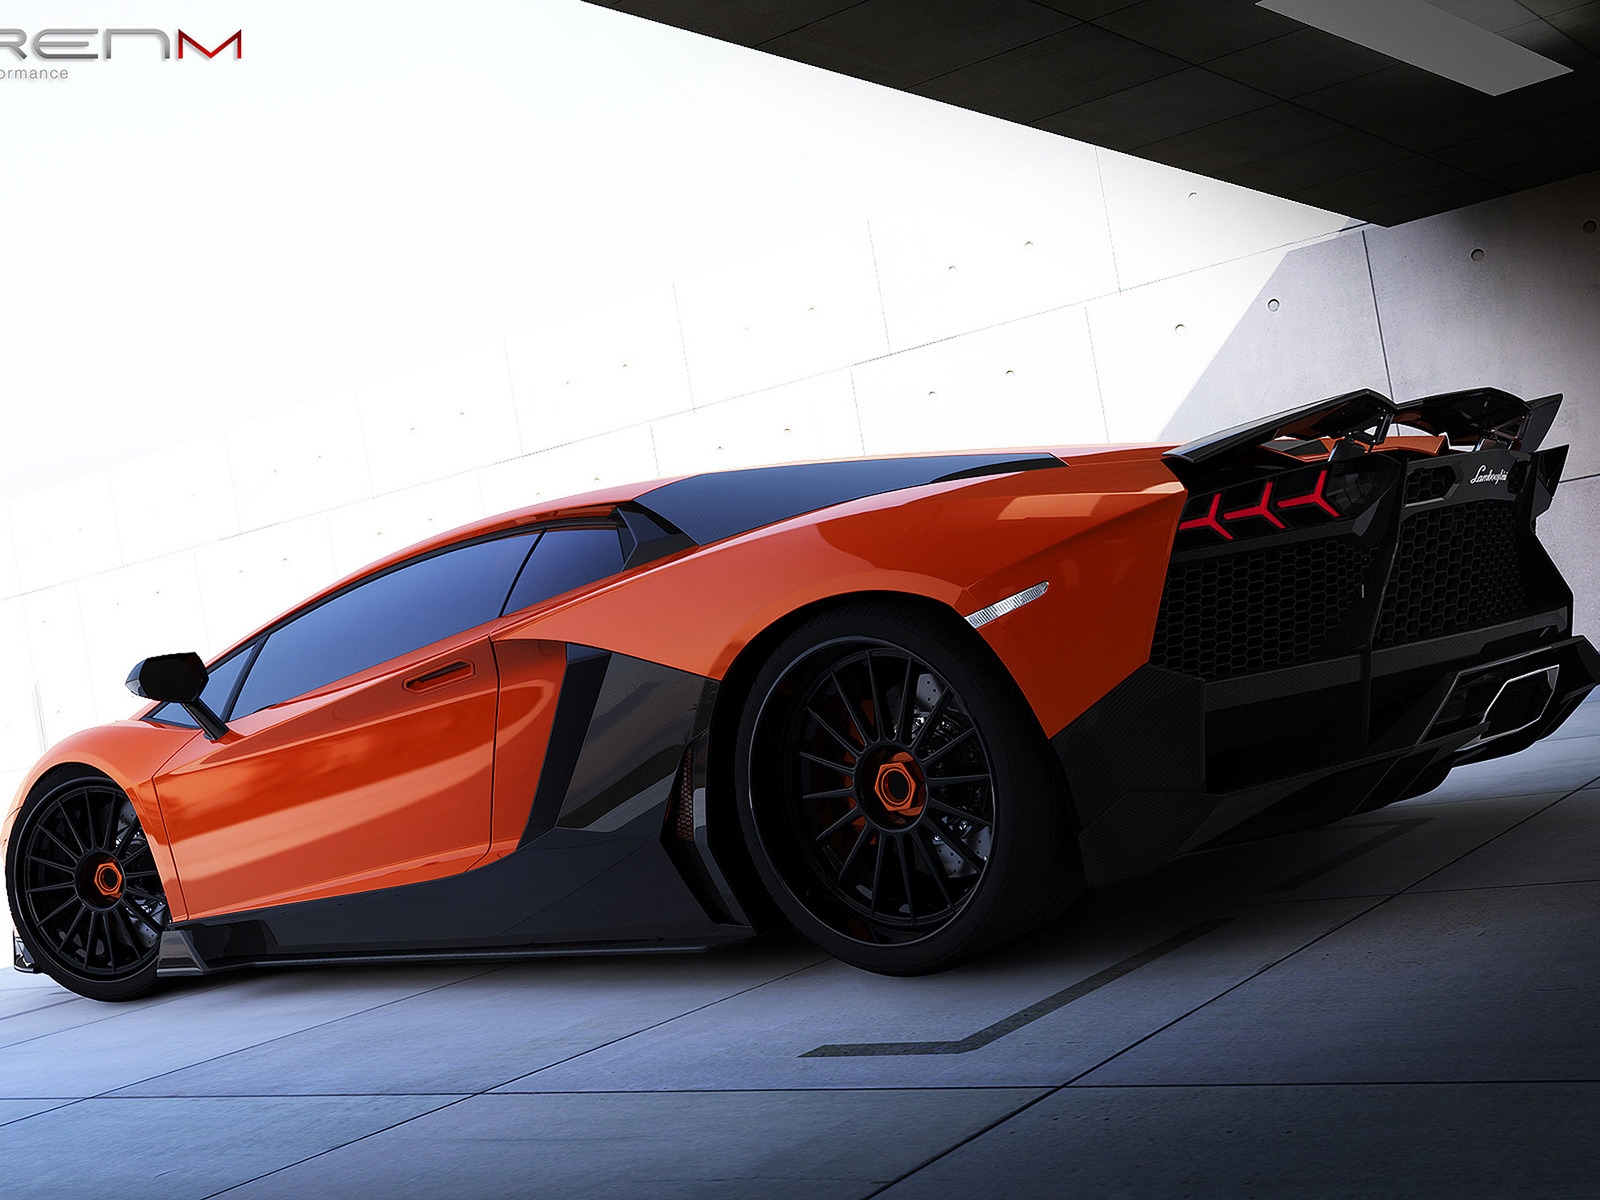 Renm Lamborghini Aventador for 1600 x 1200 resolution